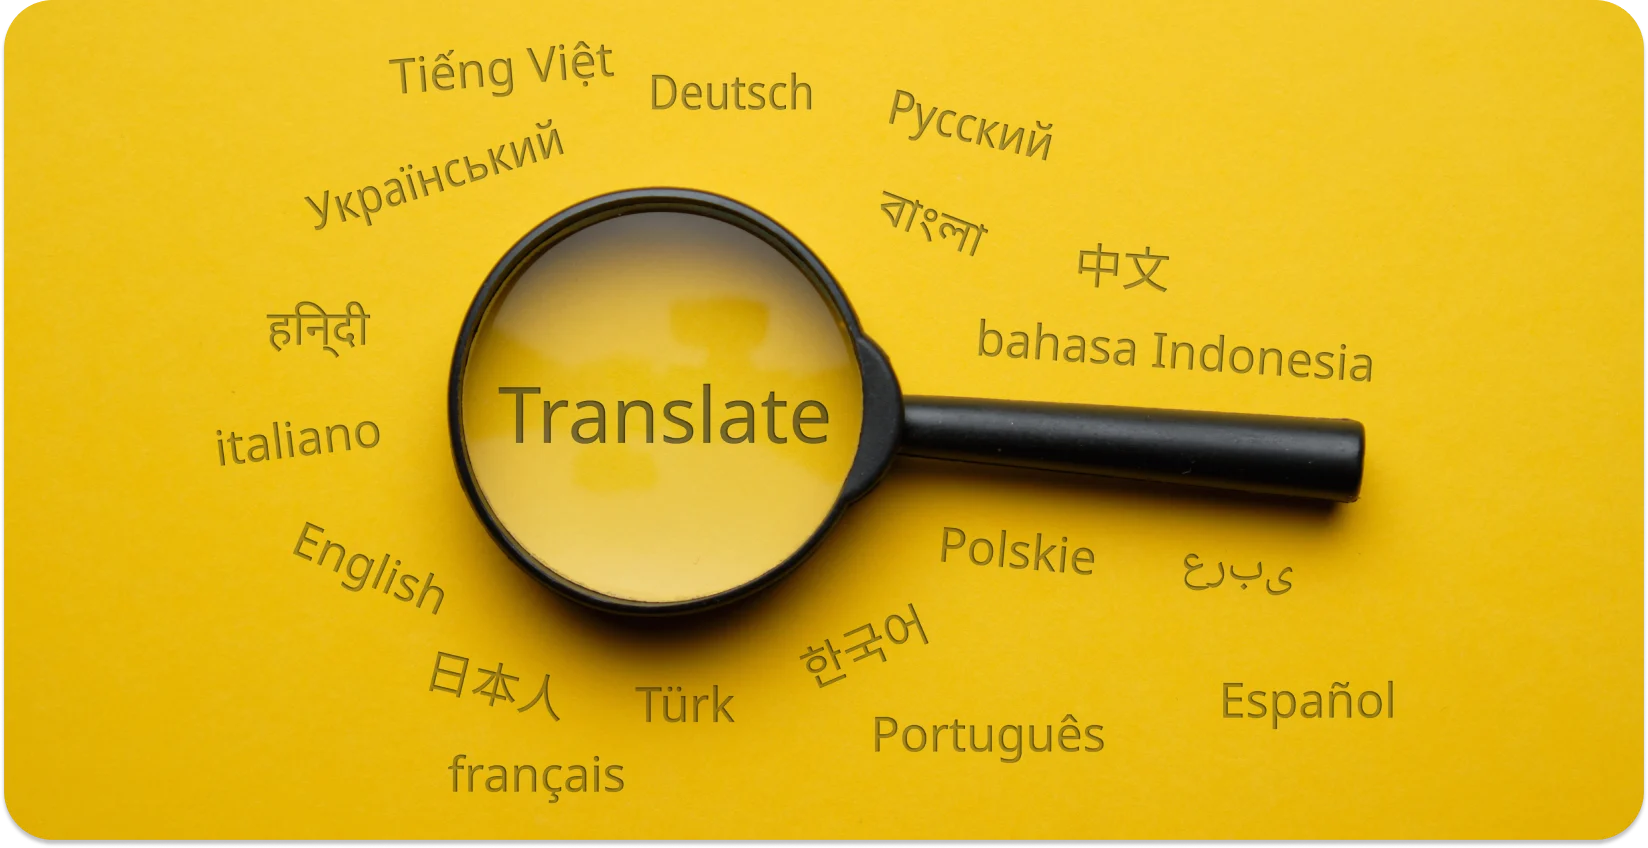 Lupa que resalta 'Traducir' en varios idiomas, simbolizando la conversión lingüística.